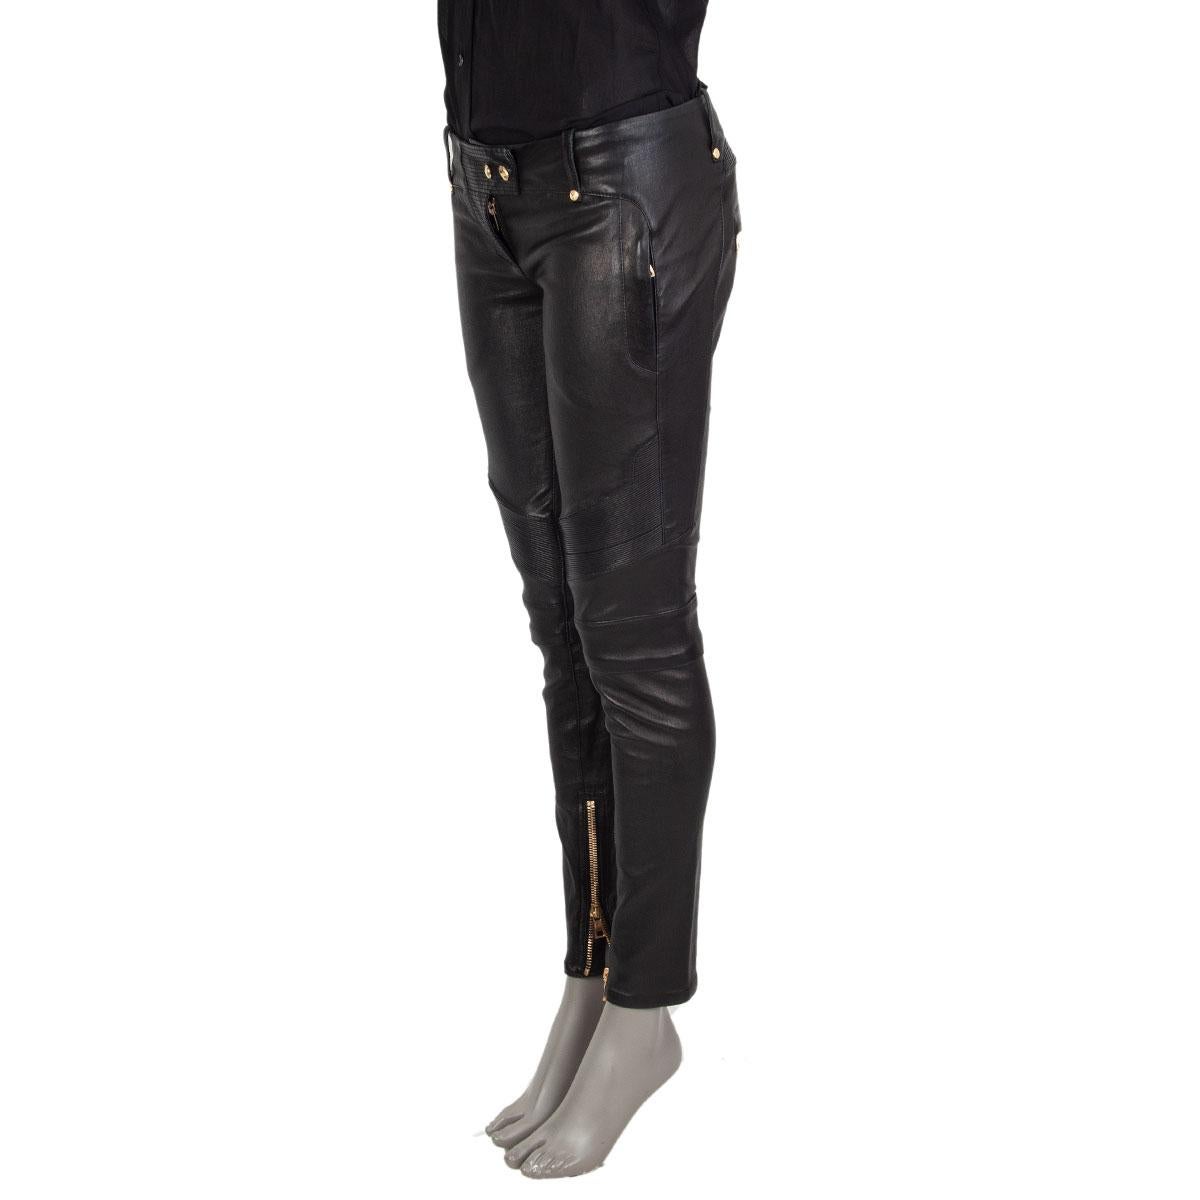 100% authentische Balmain Biker-Hose aus schwarzem Lammleder mit goldfarbenen Knöpfen mit Adlerprägung, Reißverschlusstaschen vorne, Reißverschlusstaschen hinten und Manschettenreißverschlüssen. Auf der Vorderseite mit einem Reißverschluss und